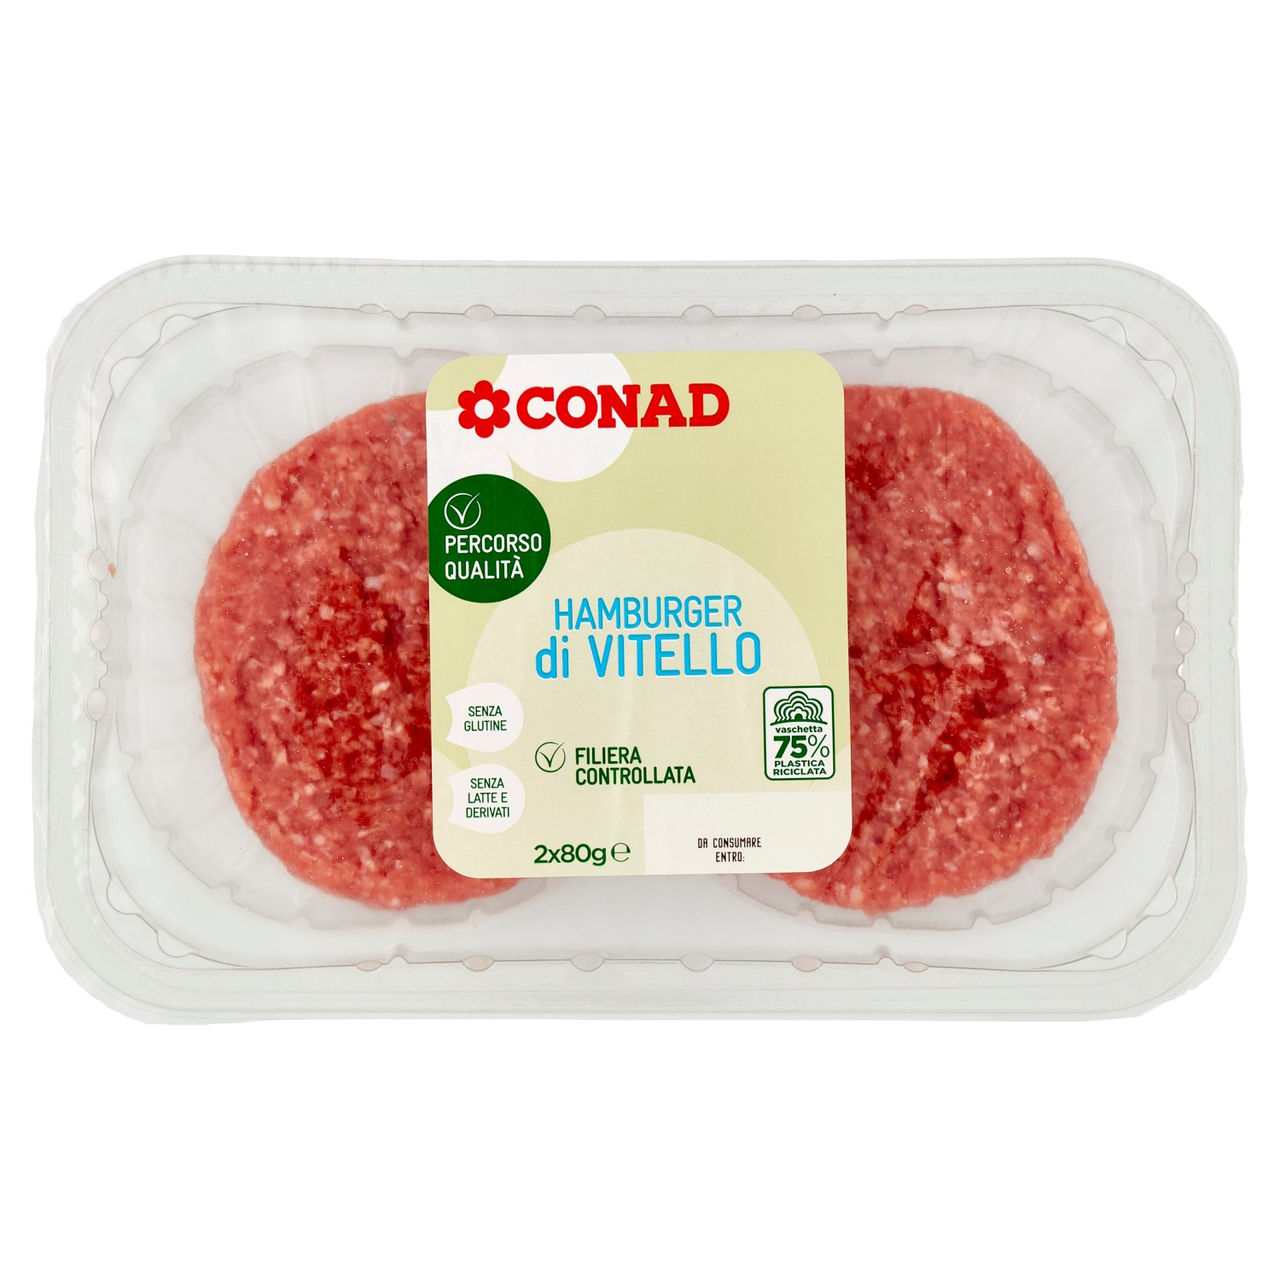 CONAD Percorso Qualità Hamburger di Vitello 2 x 80 g